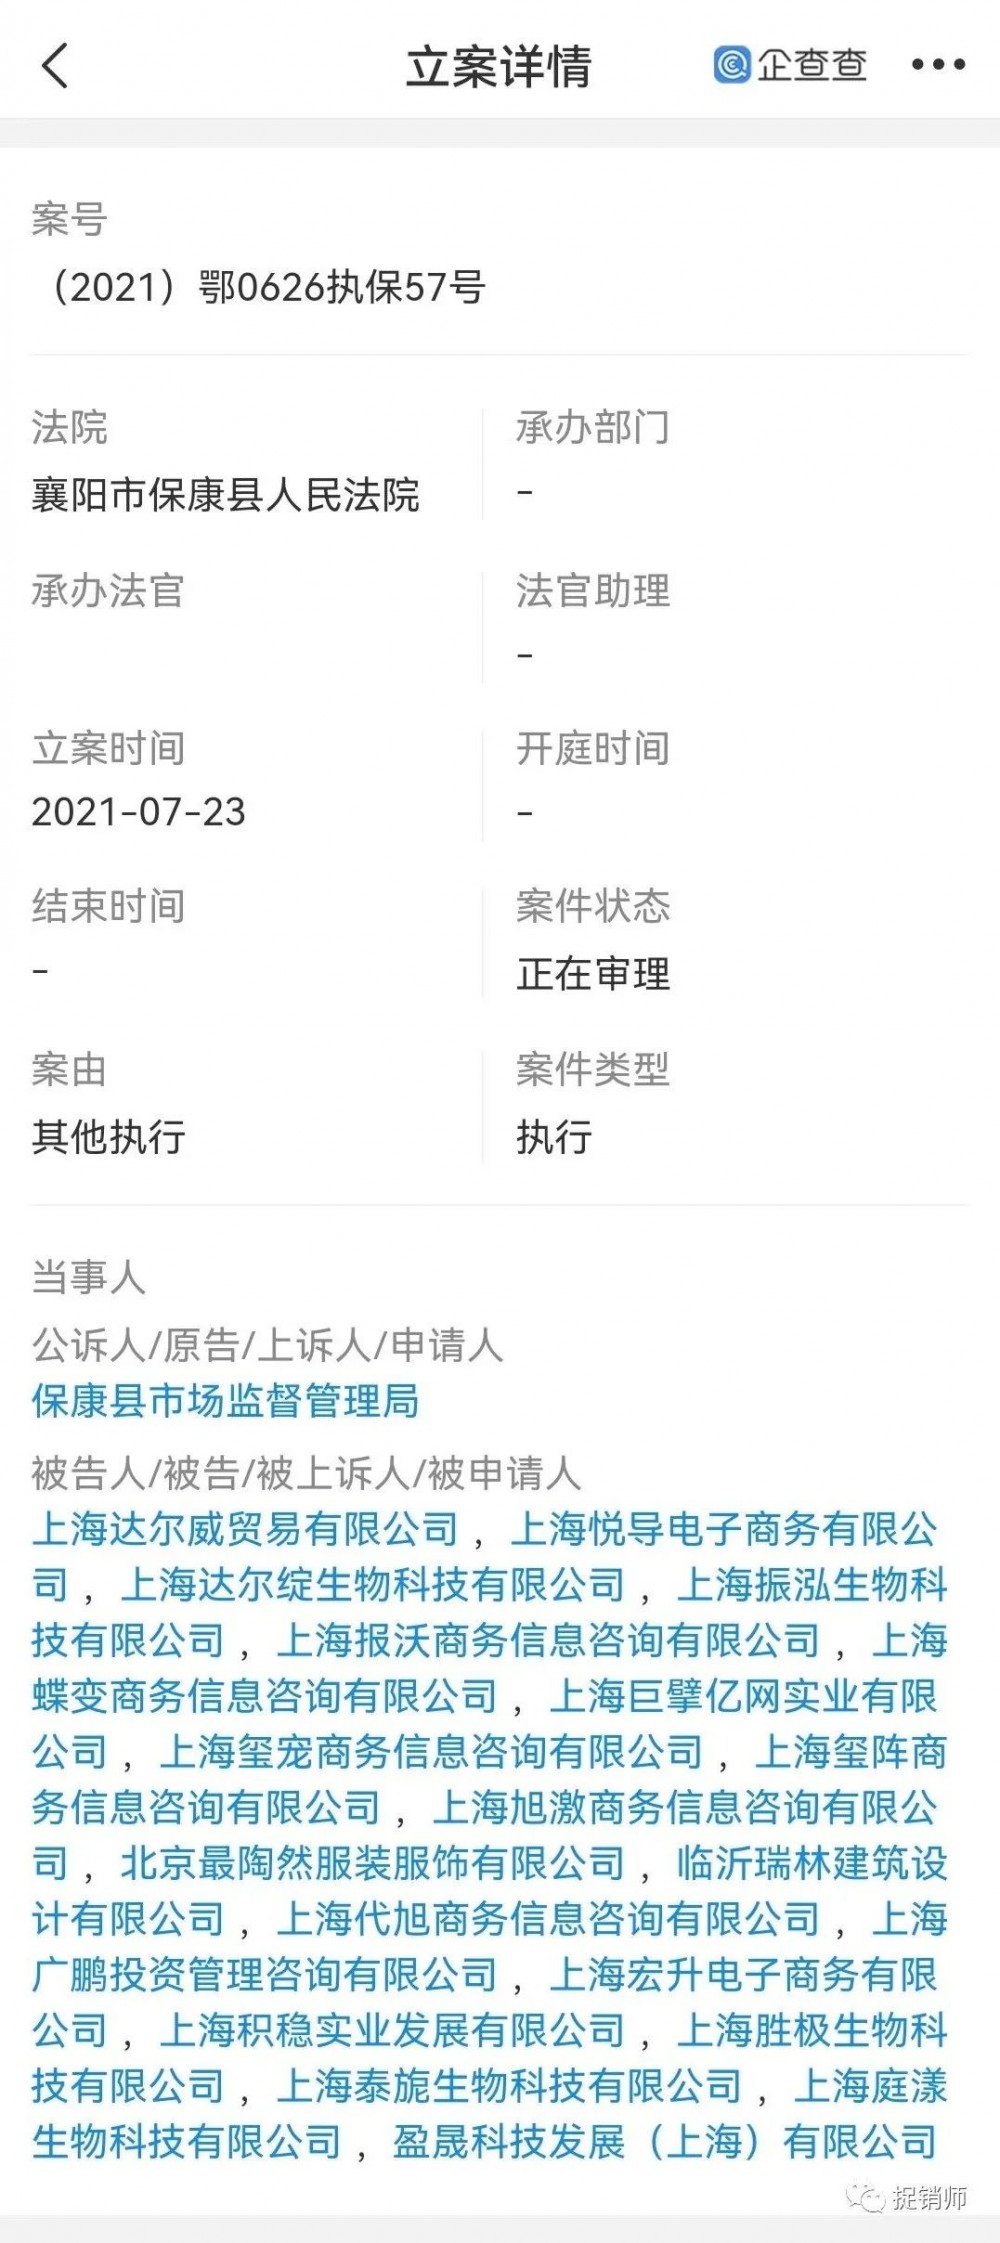 此前曾遭保全审查的上海达尔威因涉嫌网络传销遭冻账6亿元插图1